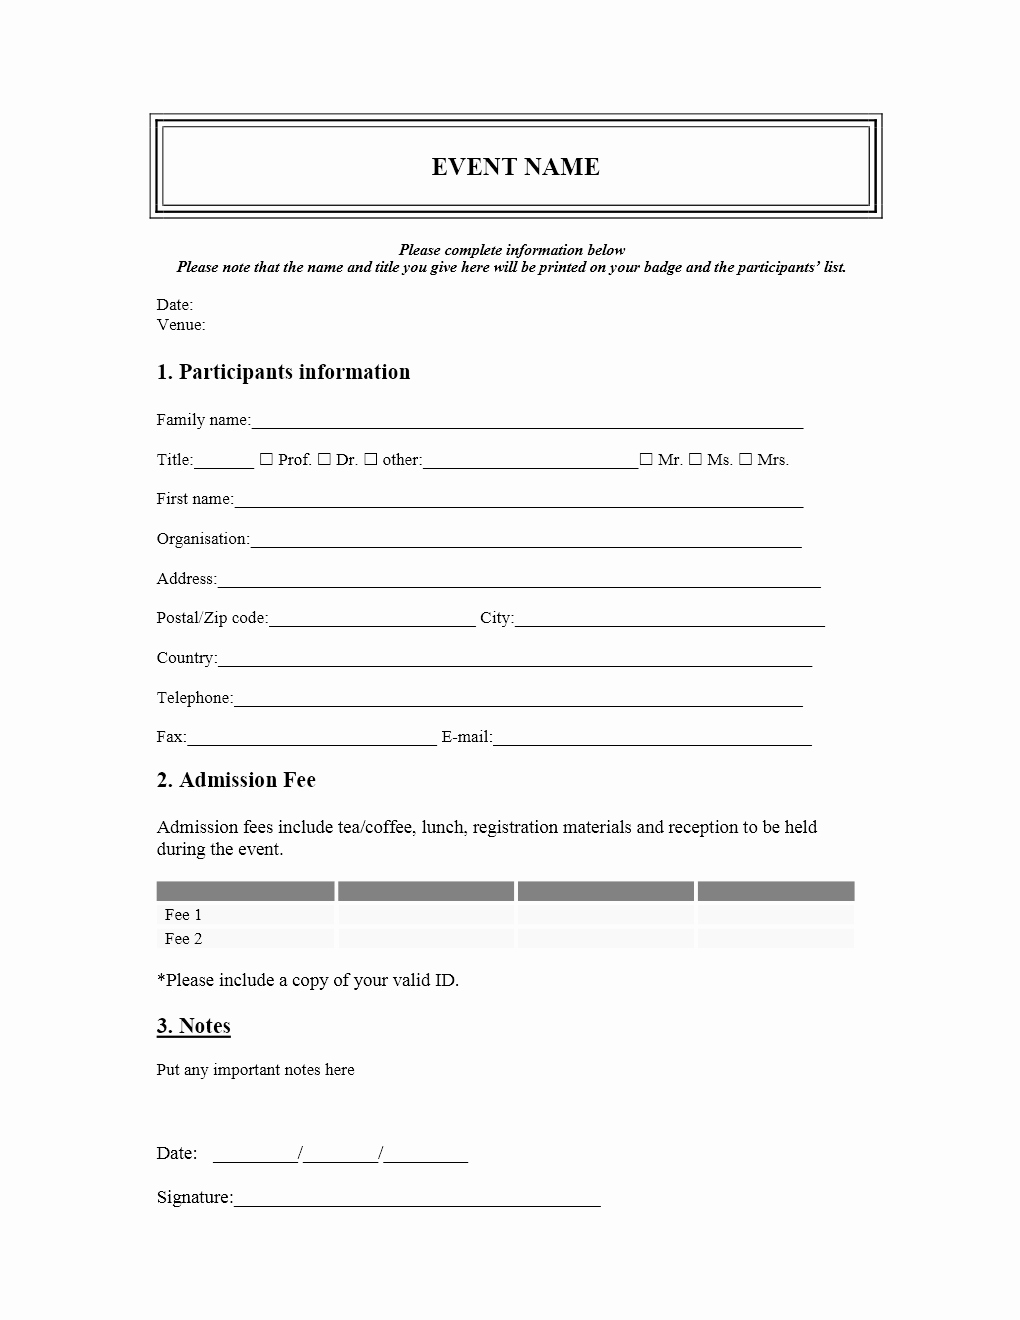 Free Registration forms Template Elegant event Registration form